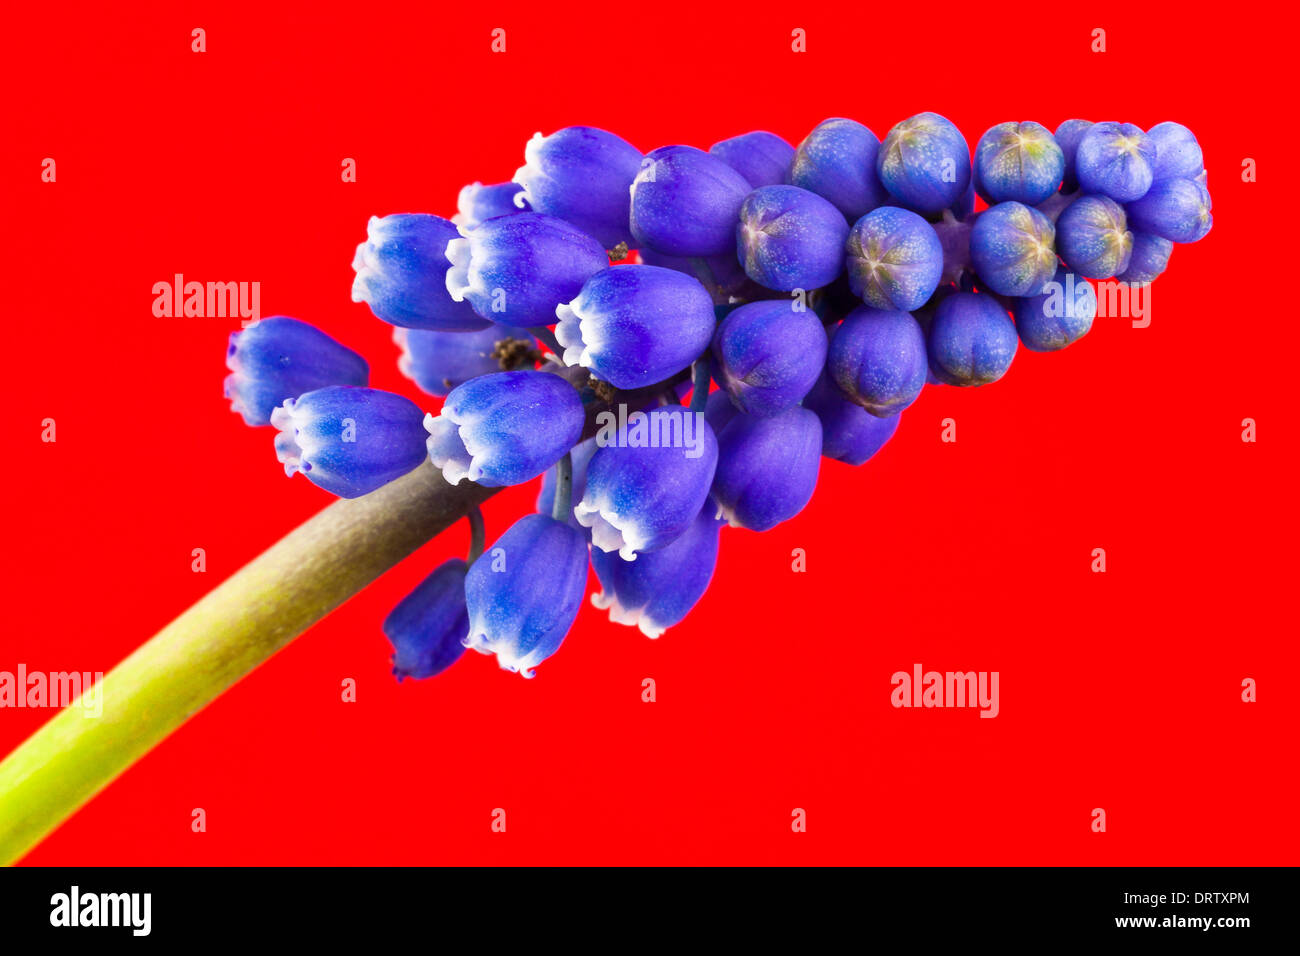 Uva armeno giacinto, close-up Foto Stock